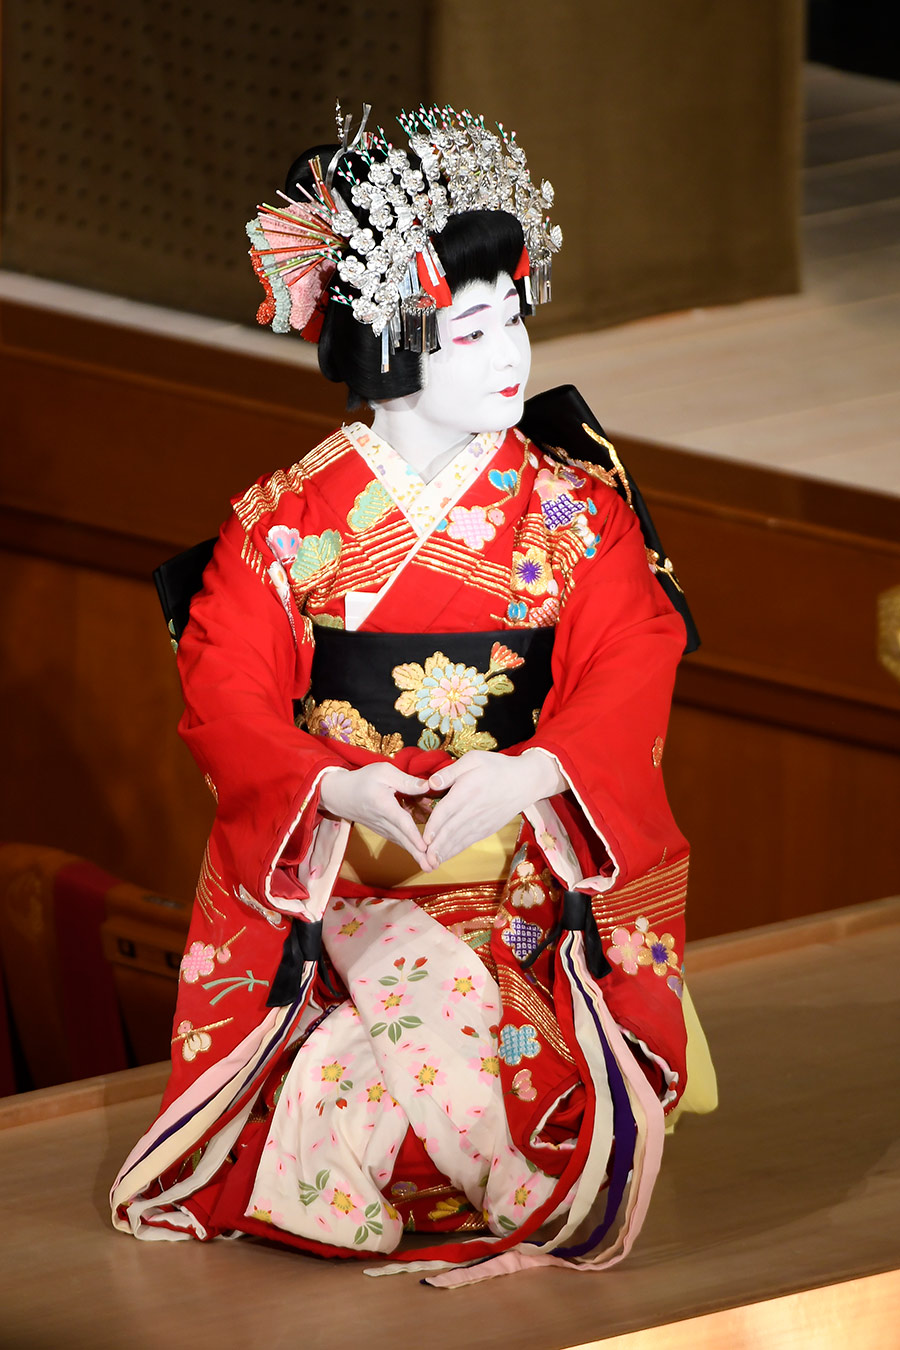 歌舞伎に魅了され 美しき女方へ 中村莟玉が語る あきらめない心 歌舞伎の今をたずねる